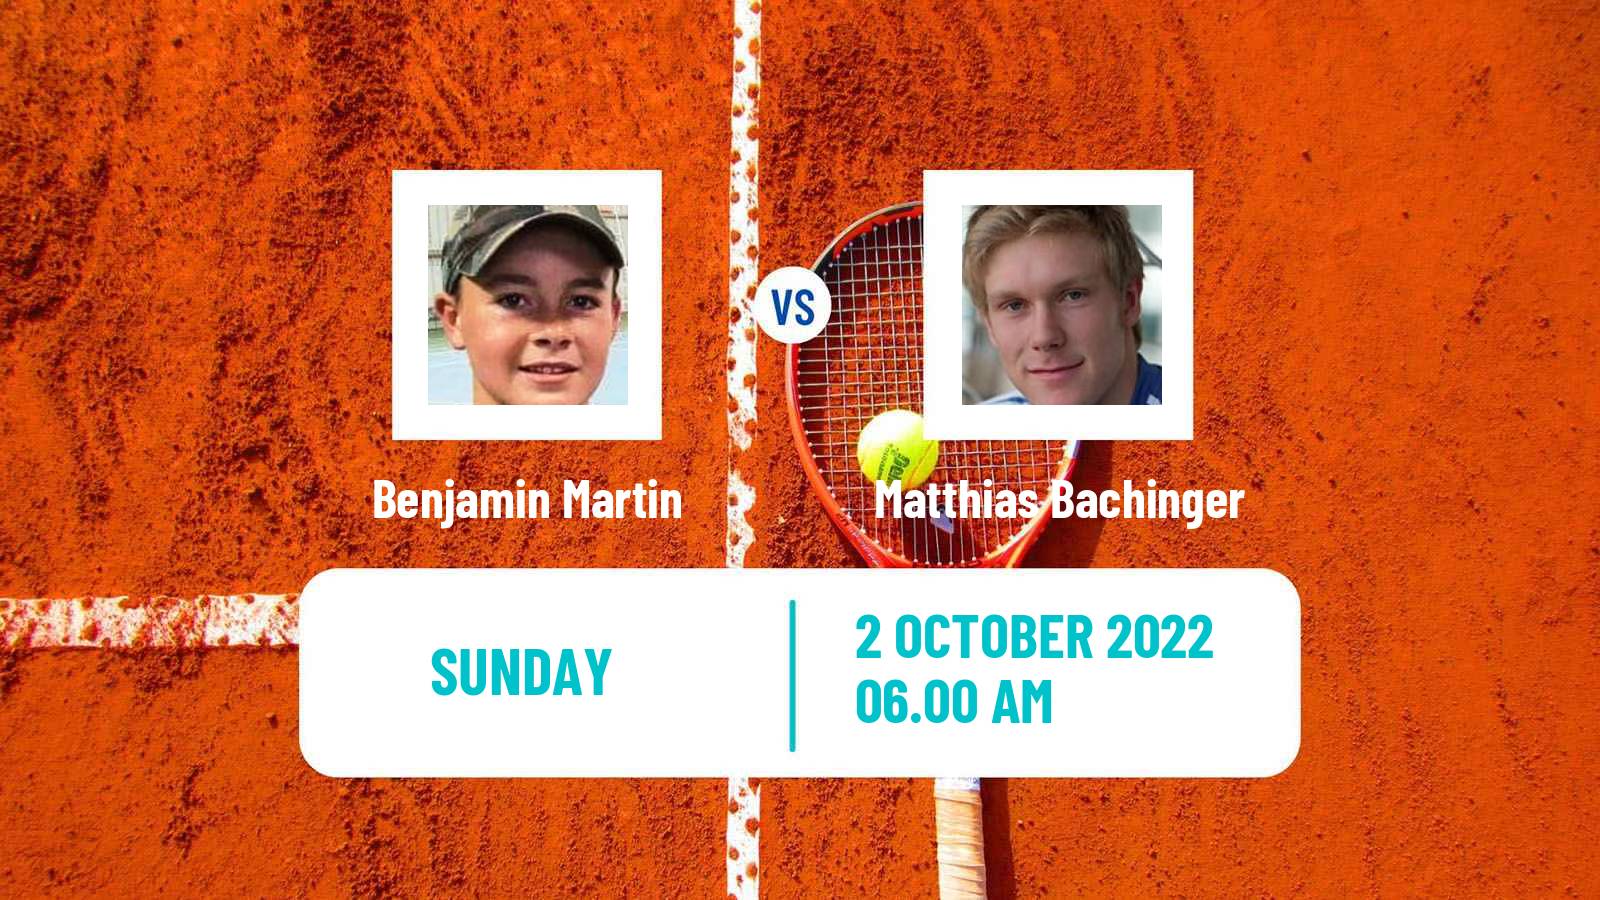 Tennis ATP Challenger Benjamin Martin - Matthias Bachinger